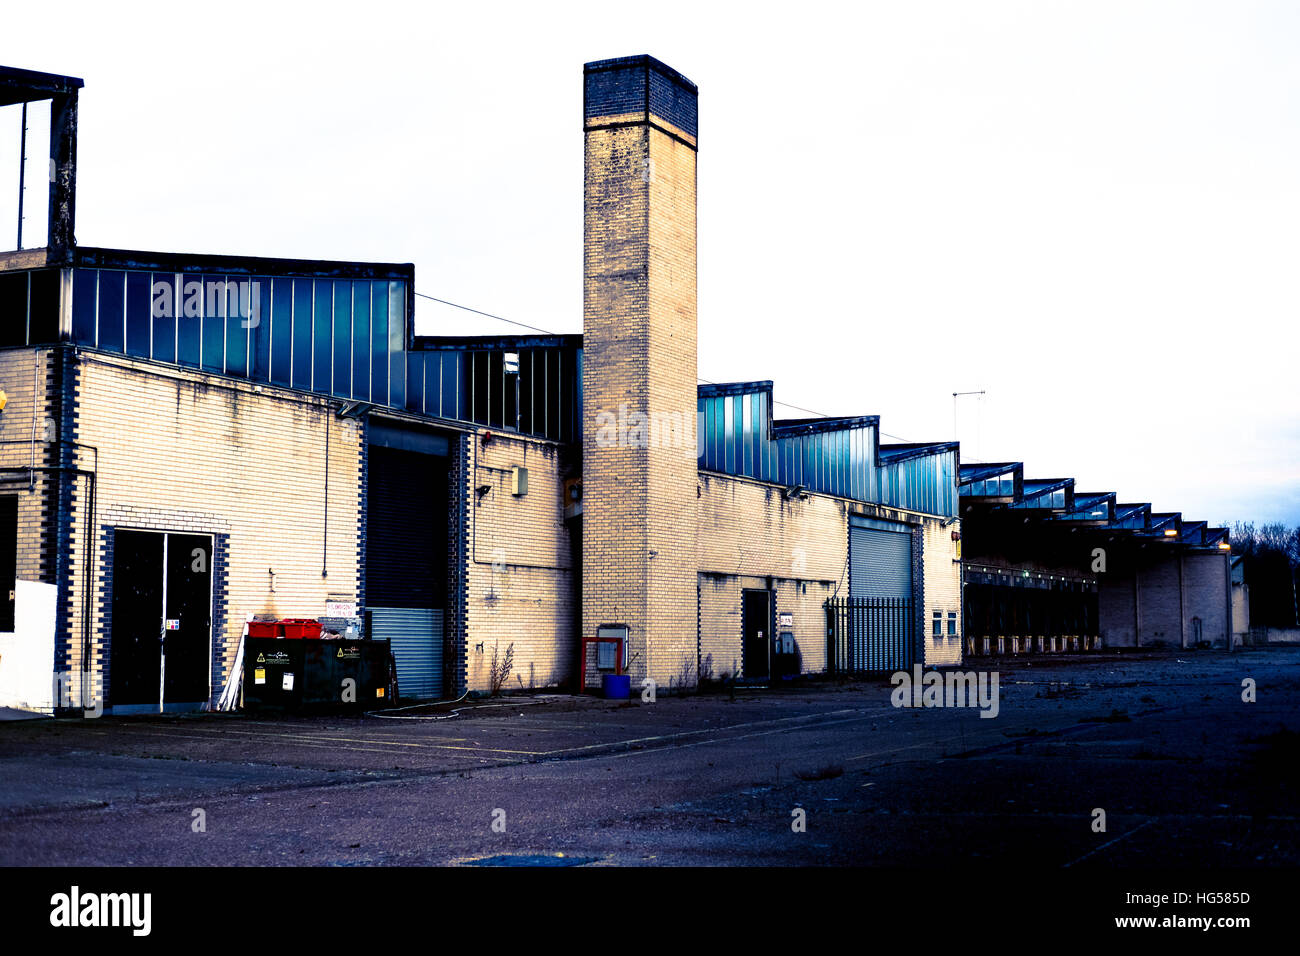 Abandoned warehouse Stock Photo